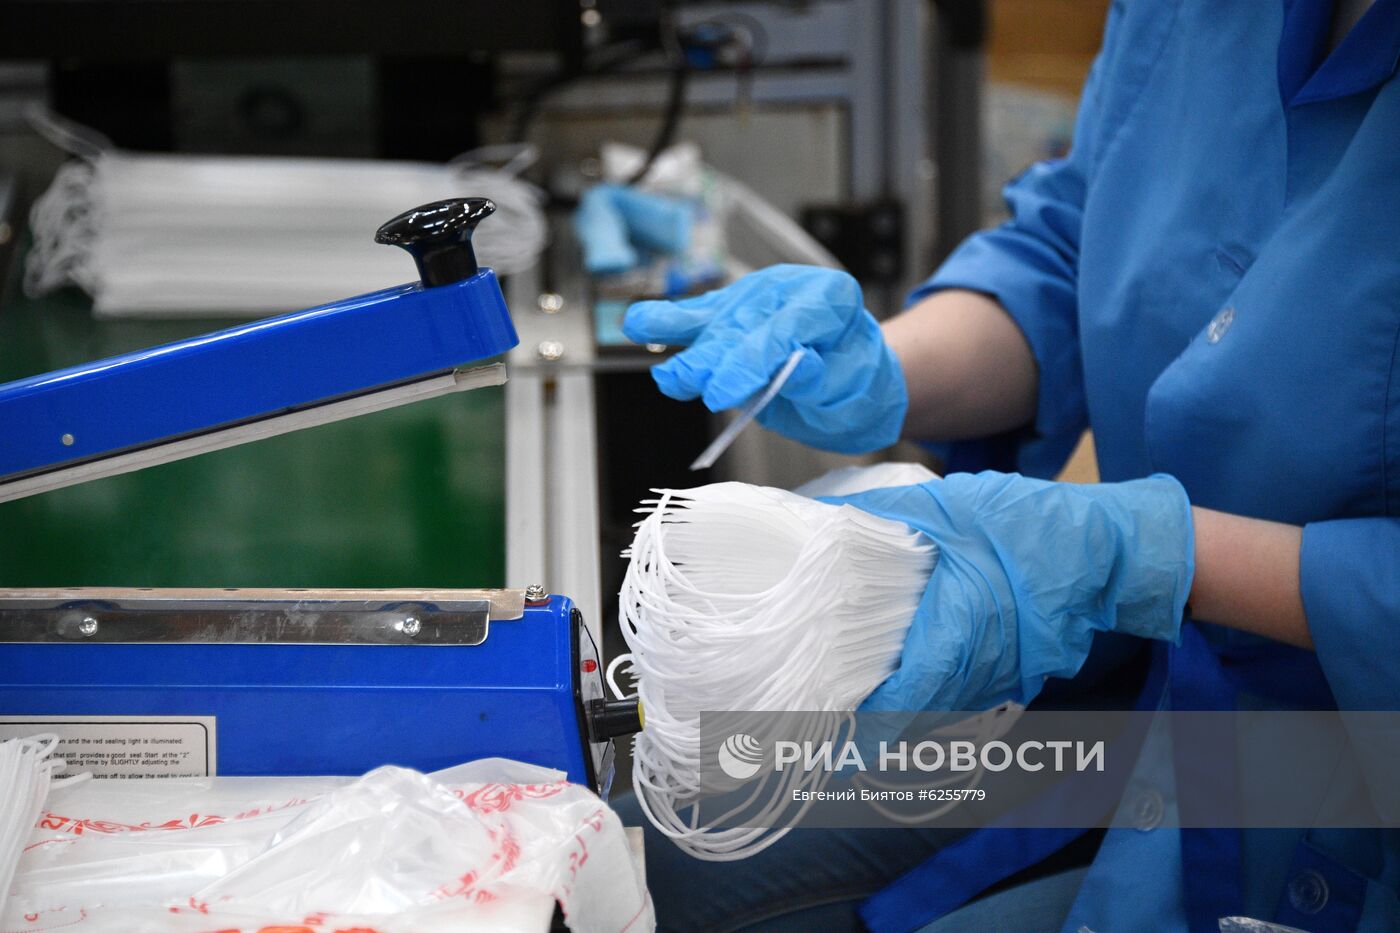  Производство масок и респираторов в технополисе "Москва" 